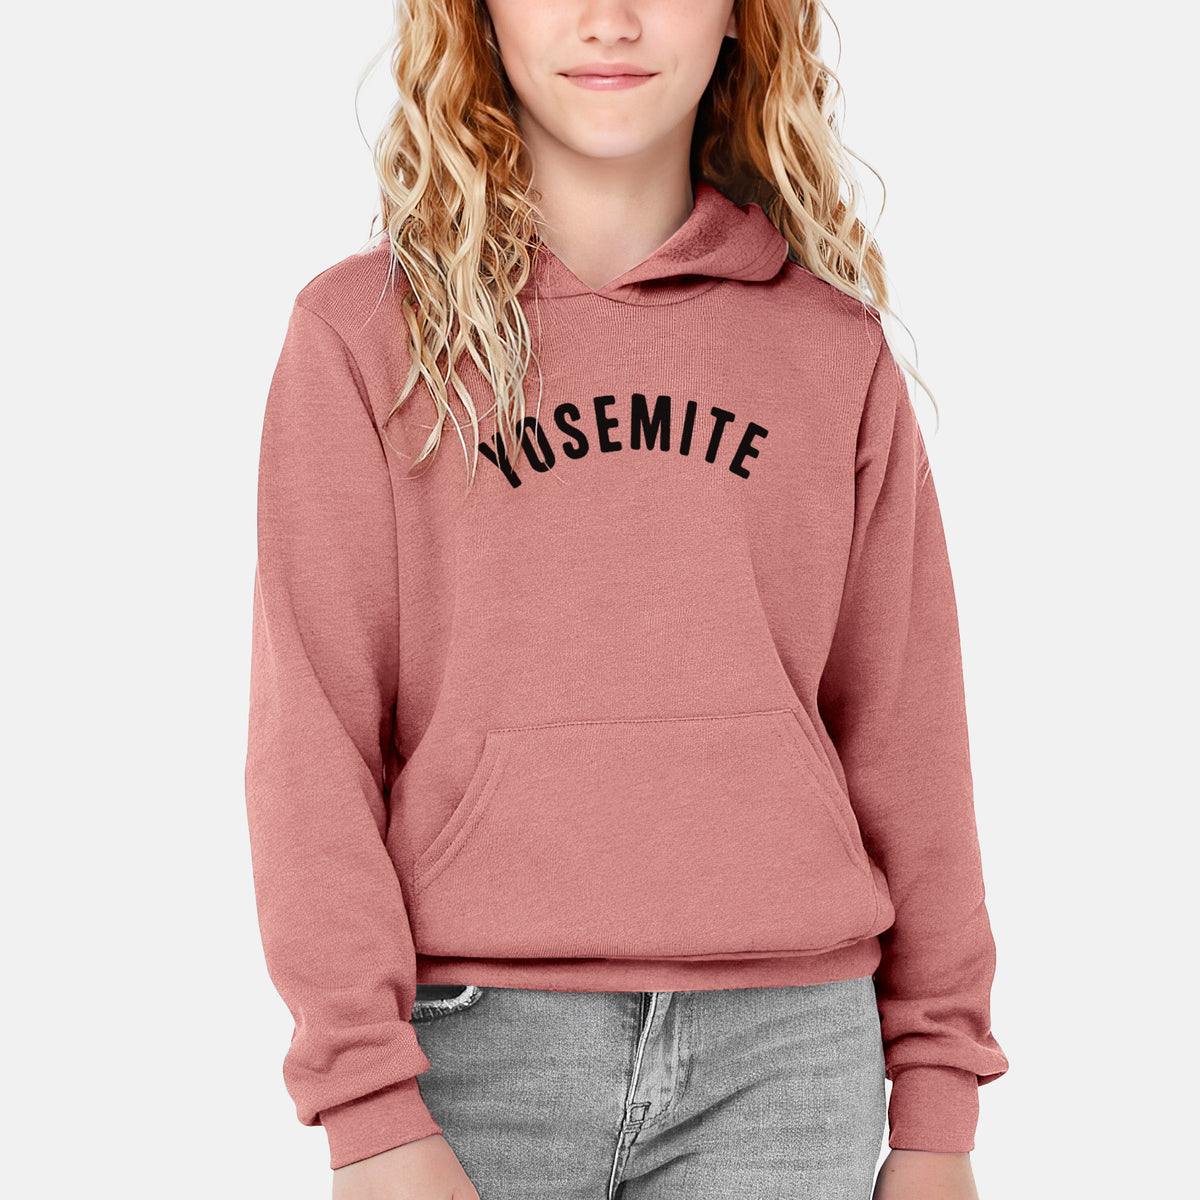 Yosemite - Youth Hoodie Sweatshirt